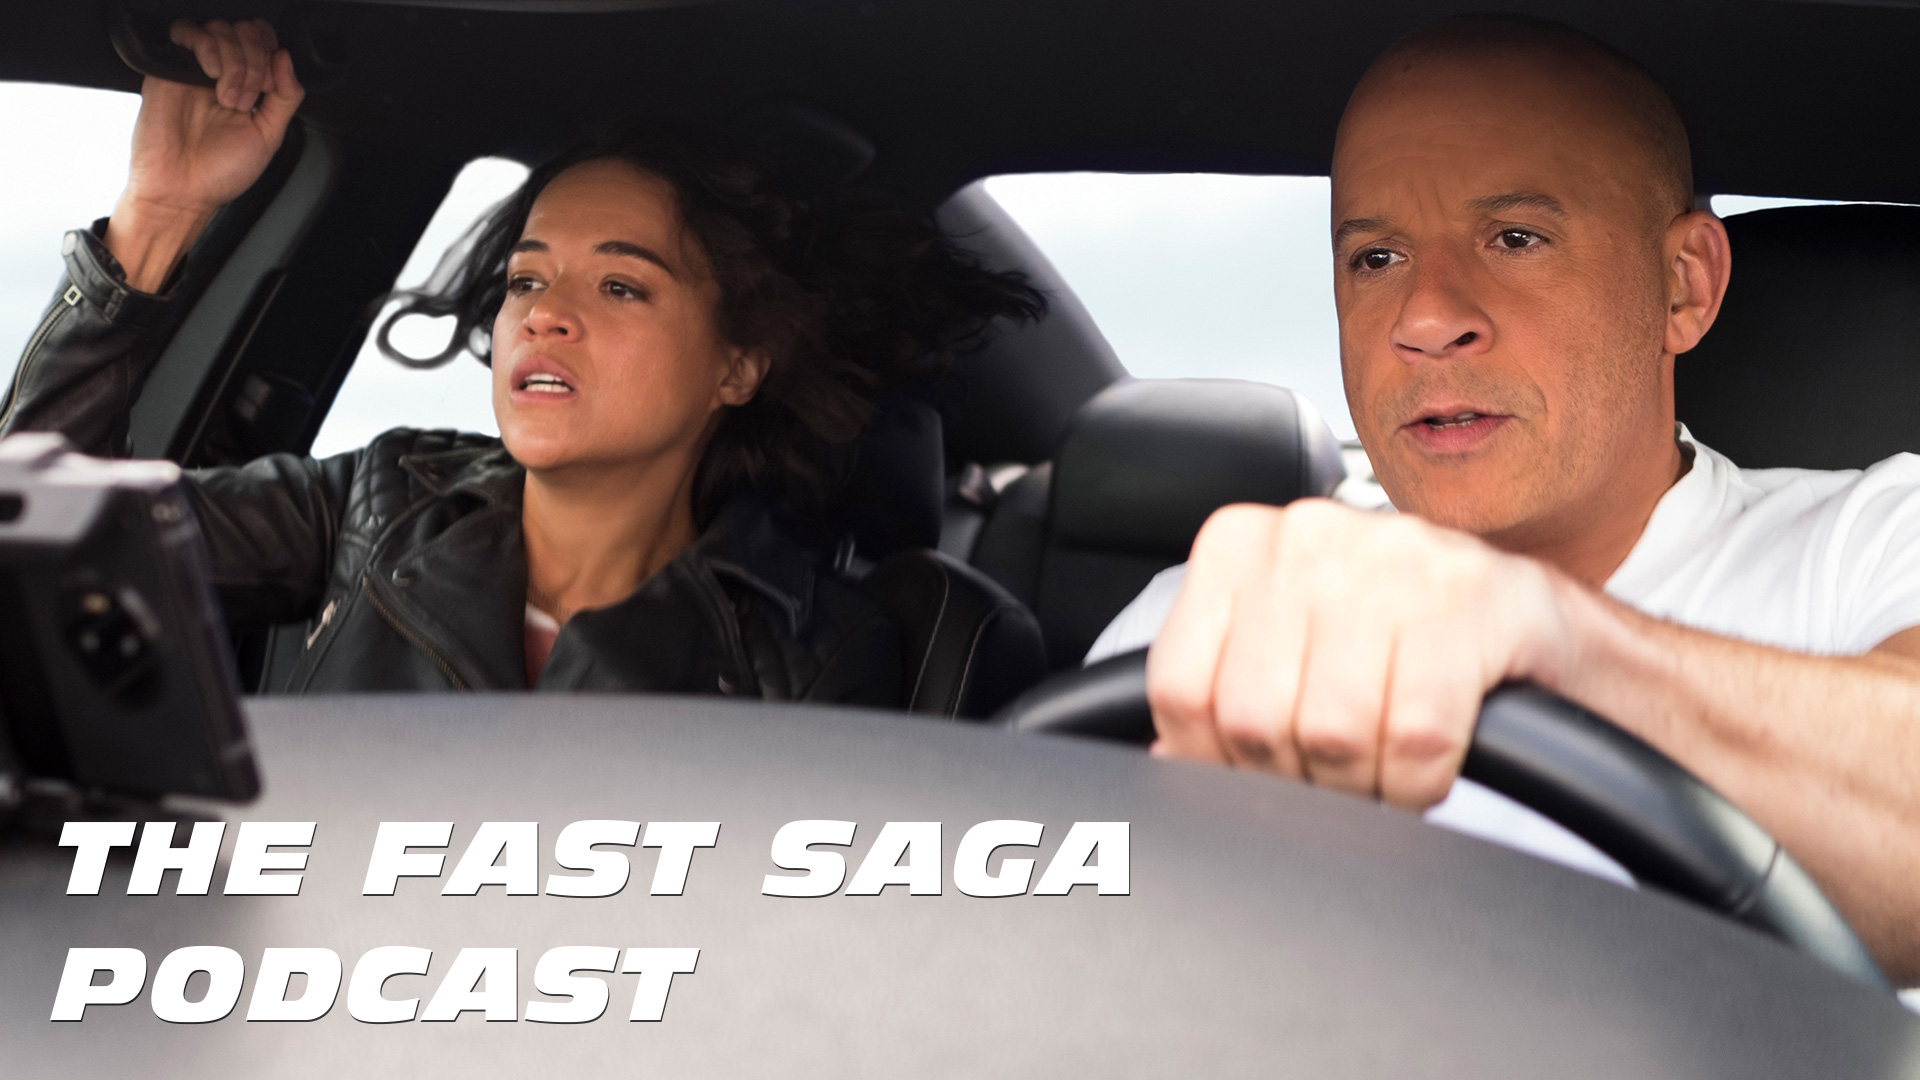 A The Fast Saga EW dedica a la sua nuova serie podcast